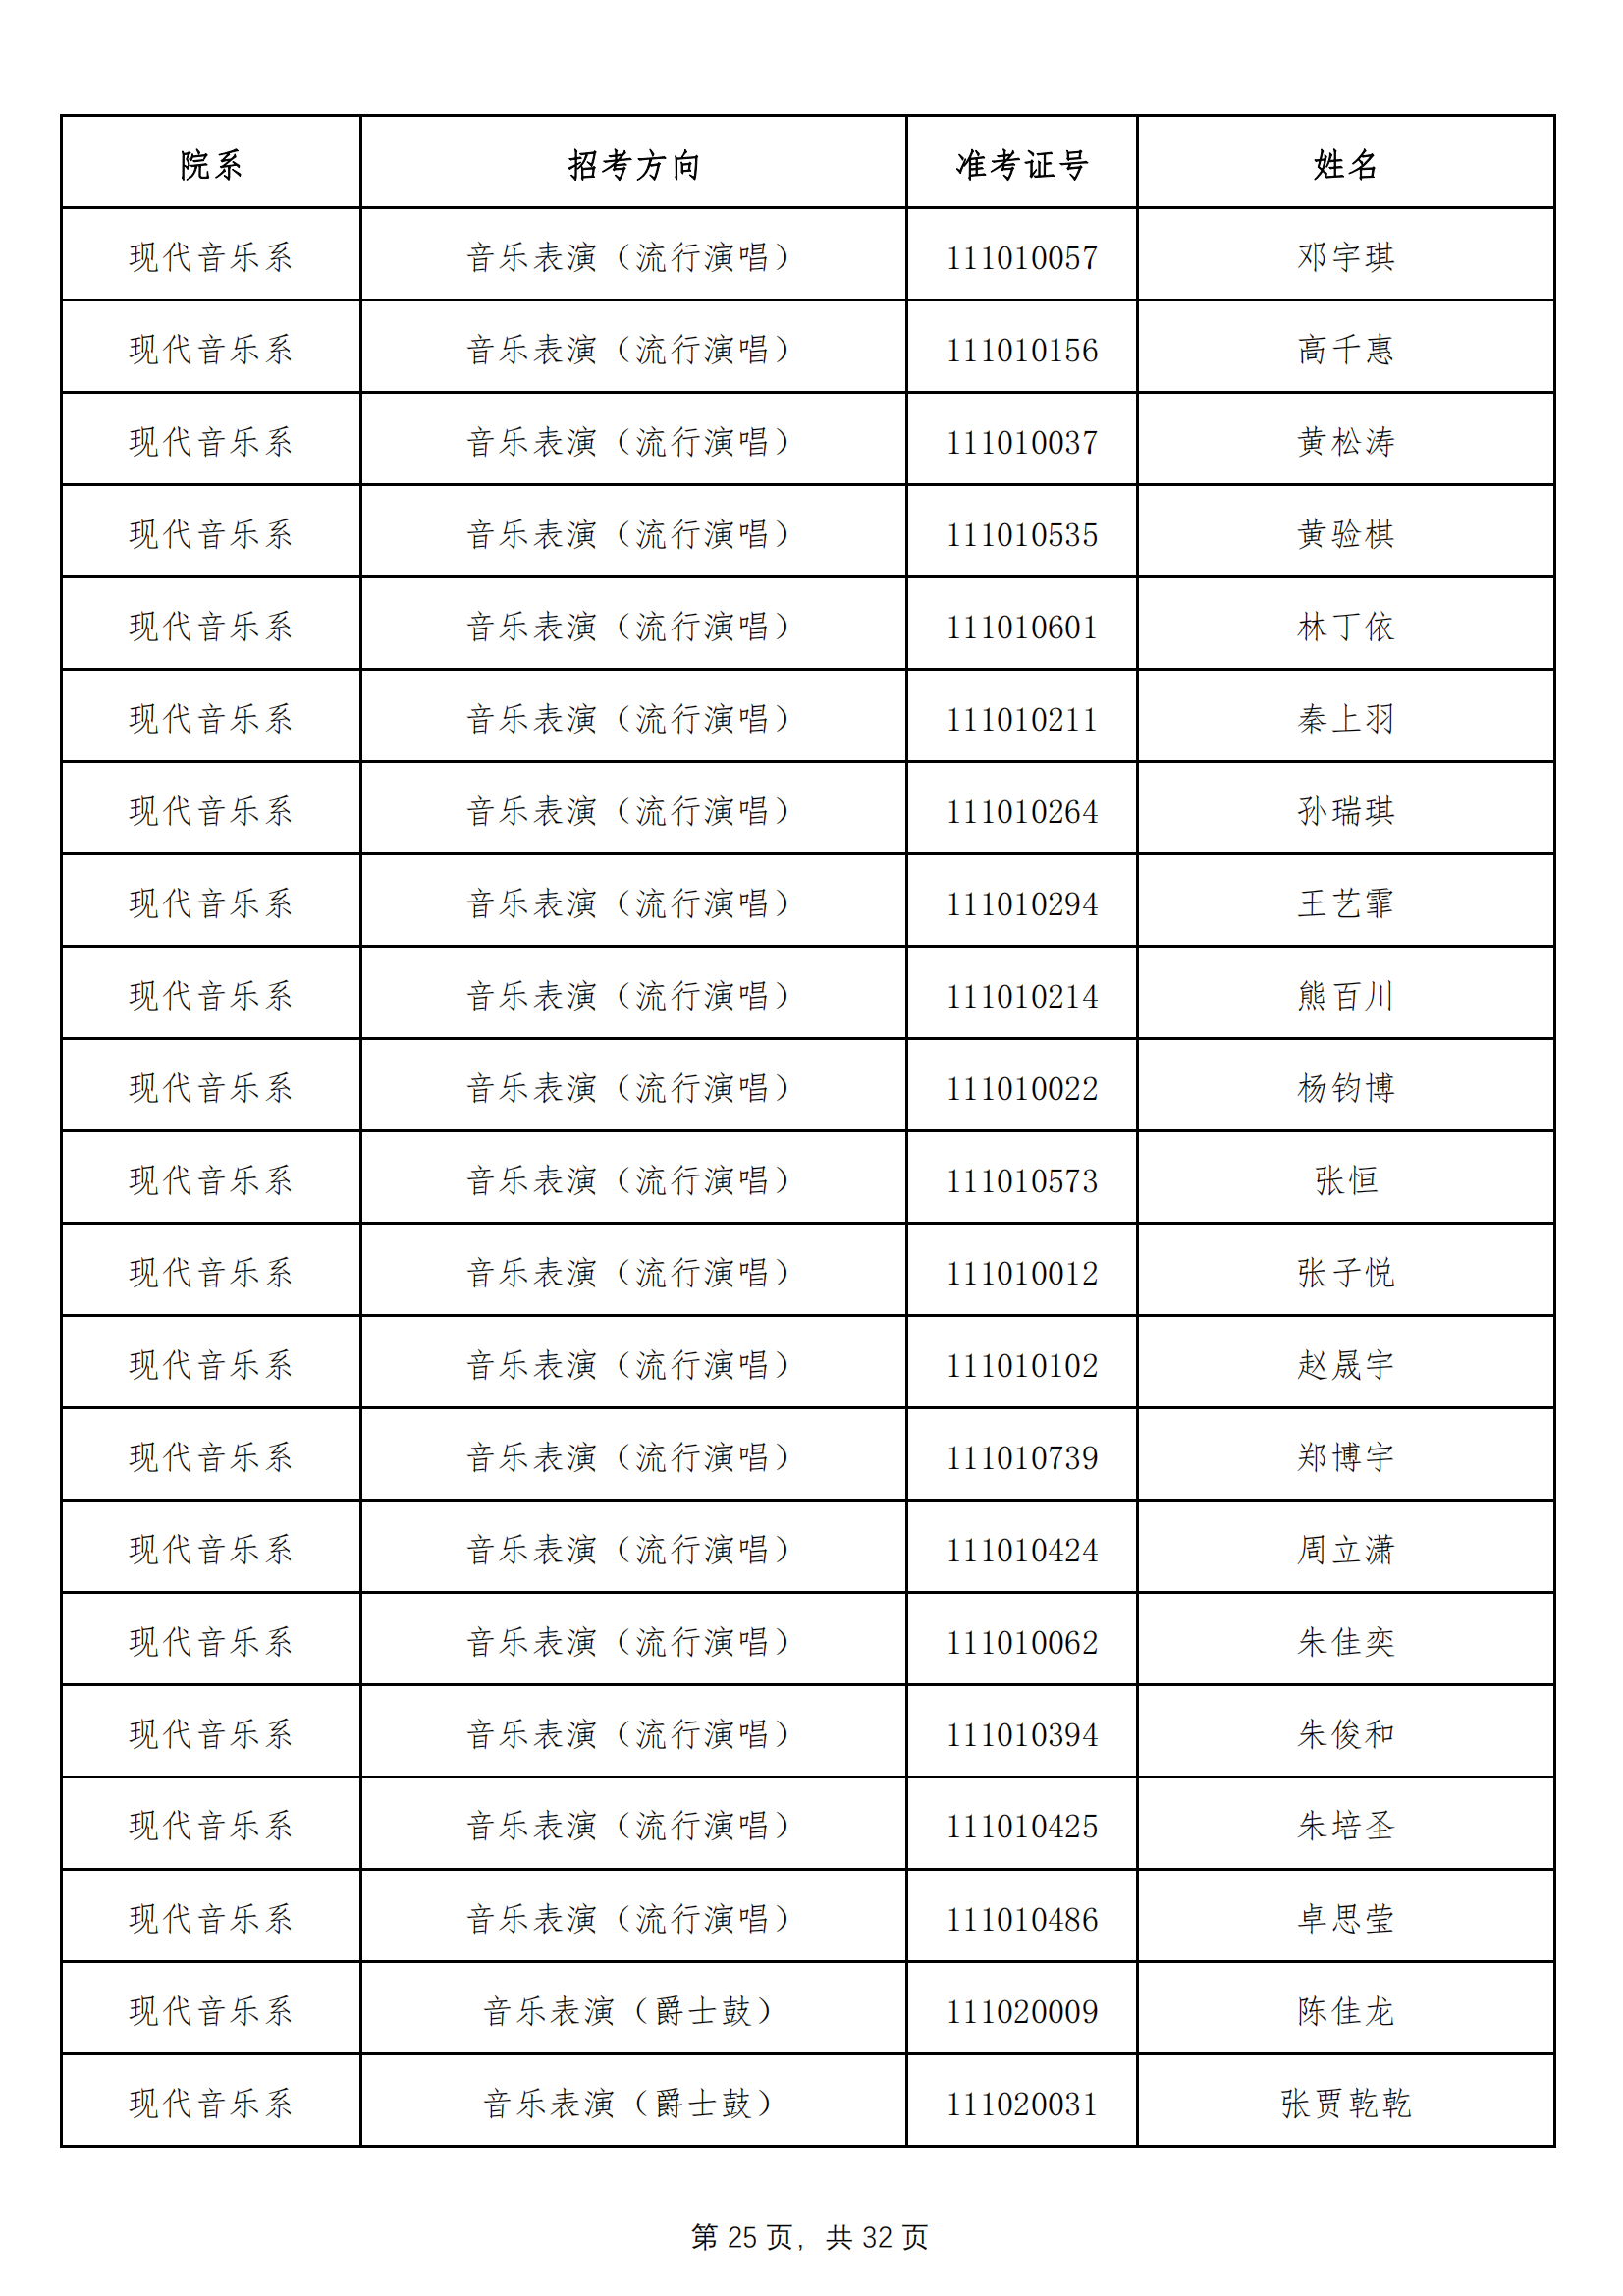 天津音乐学院2022年本科招生拟录取名单 （除上海考生外）_24.png